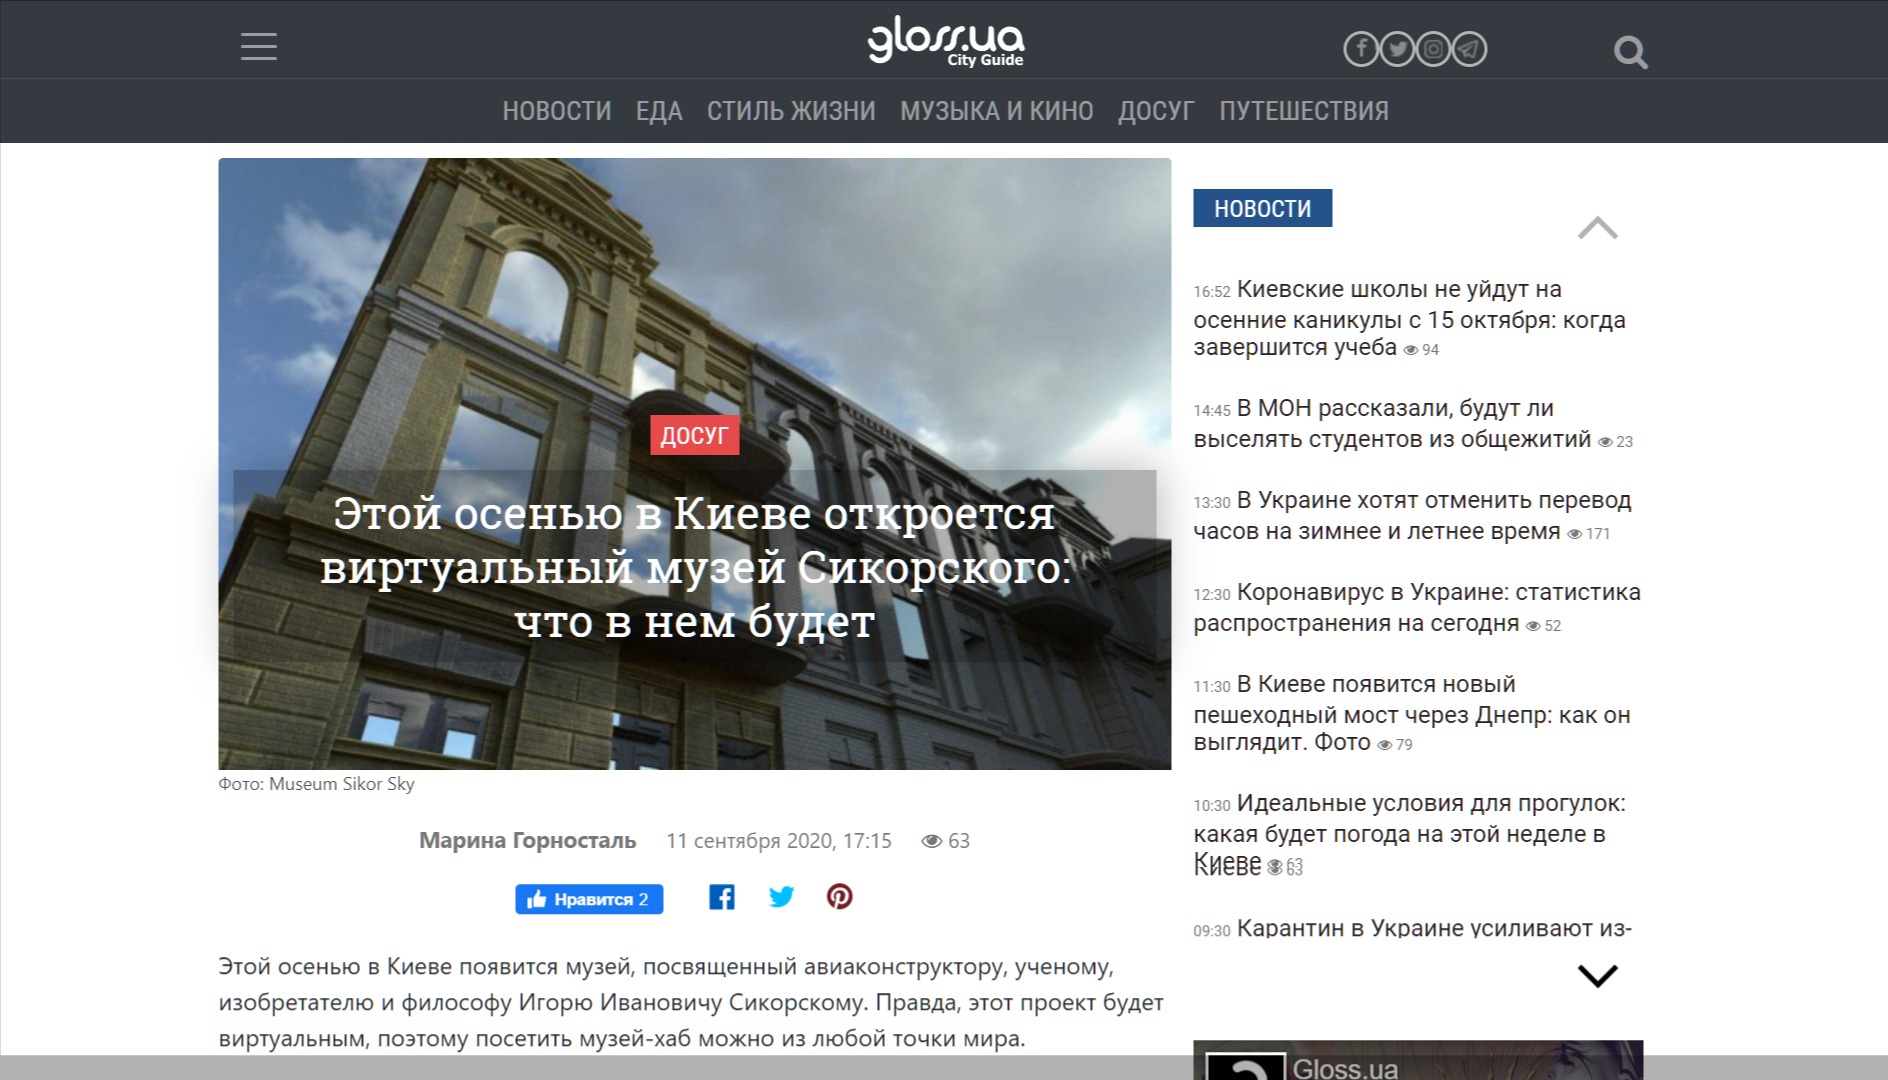 Этой осенью в Киеве откроется виртуальный музей Сикорского: что в нем будет